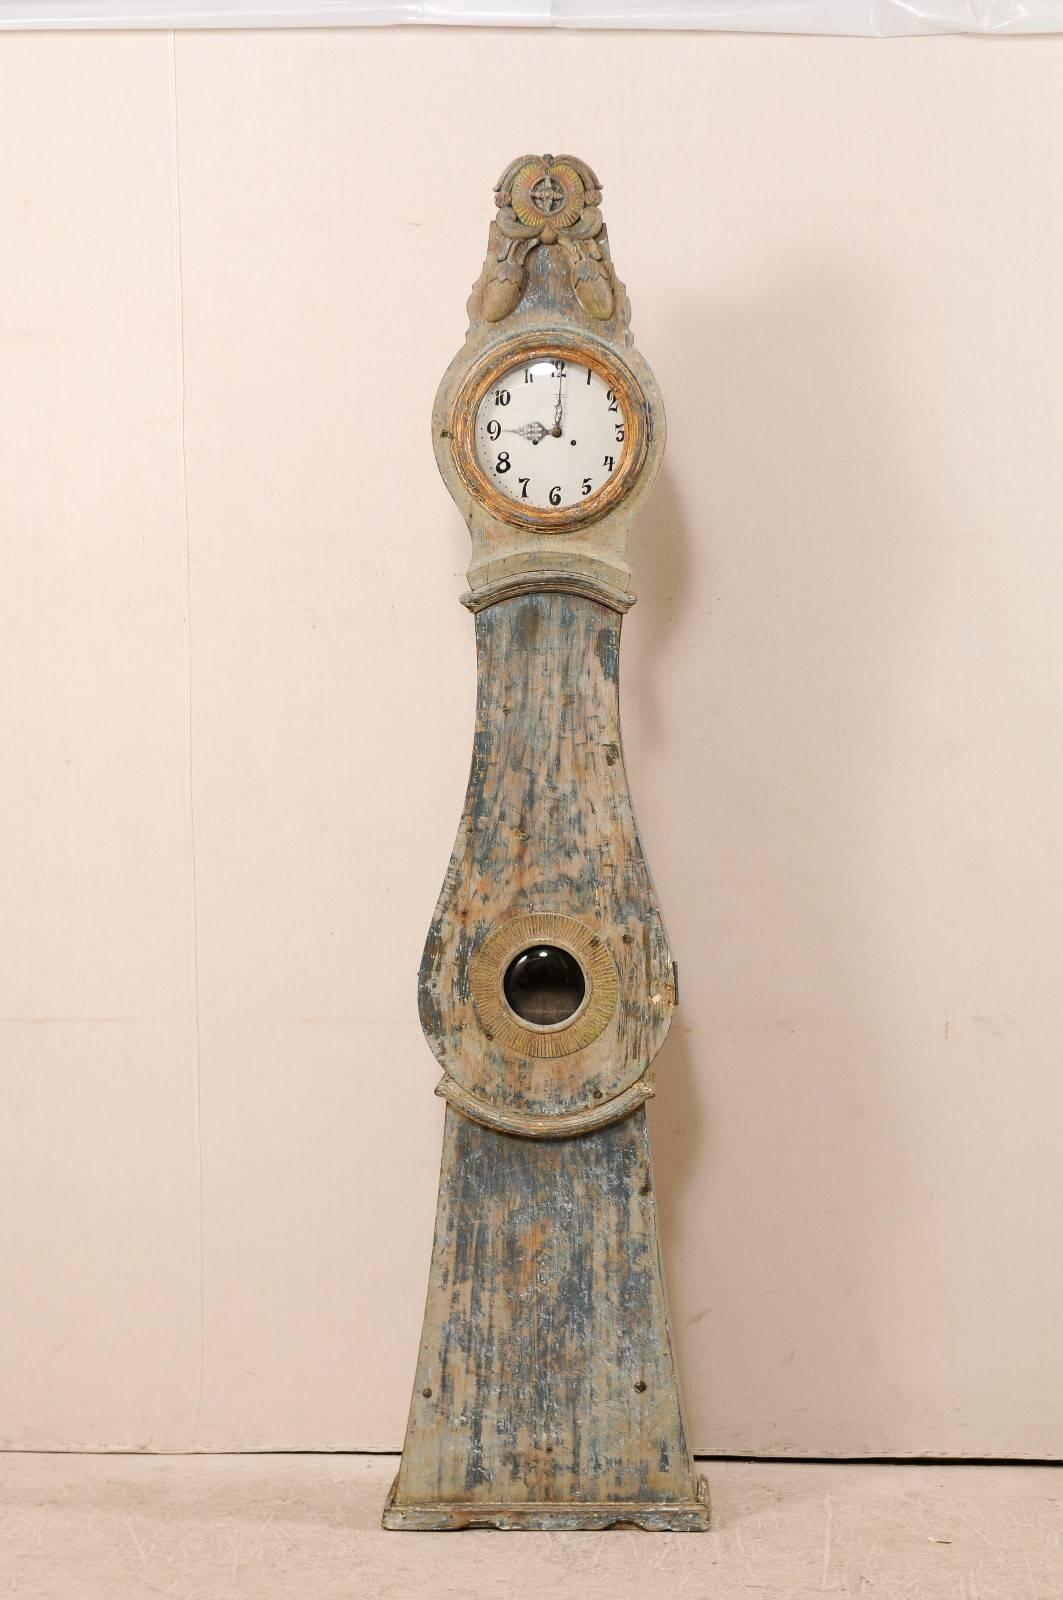 Une horloge en bois peint du nord de la Suède du 19ème siècle. Cette horloge suédoise du comté de Norrbotten, en Suède (région du Nord), présente un cimier joliment sculpté, exagéré et en relief, orné d'une paire de glands suspendus. Cette horloge a